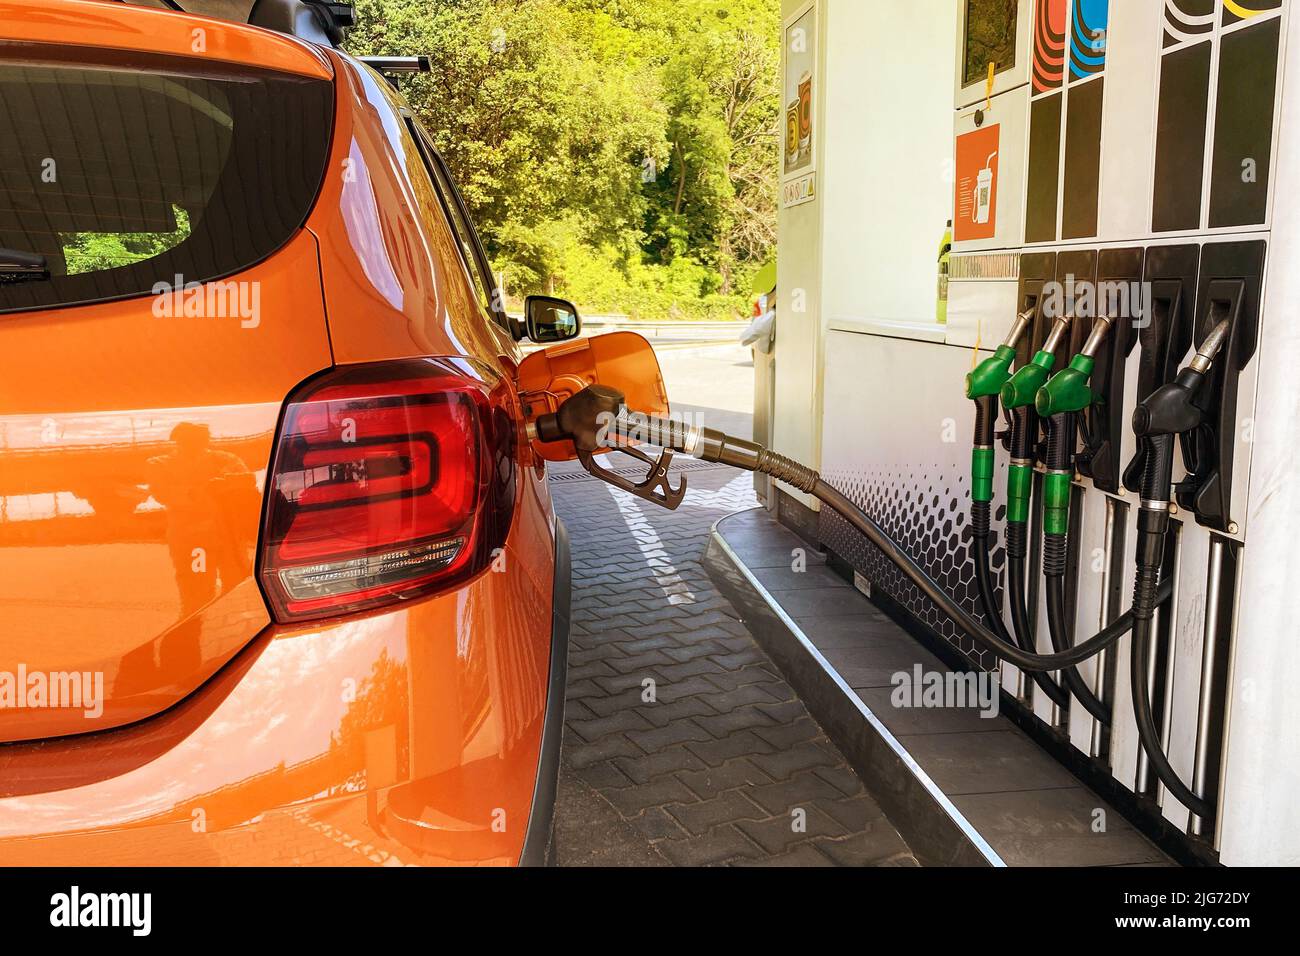 Llene el coche con combustible en la gasolinera. Bombear gasolina en un coche naranja en una gasolinera de la ciudad. Foto de stock